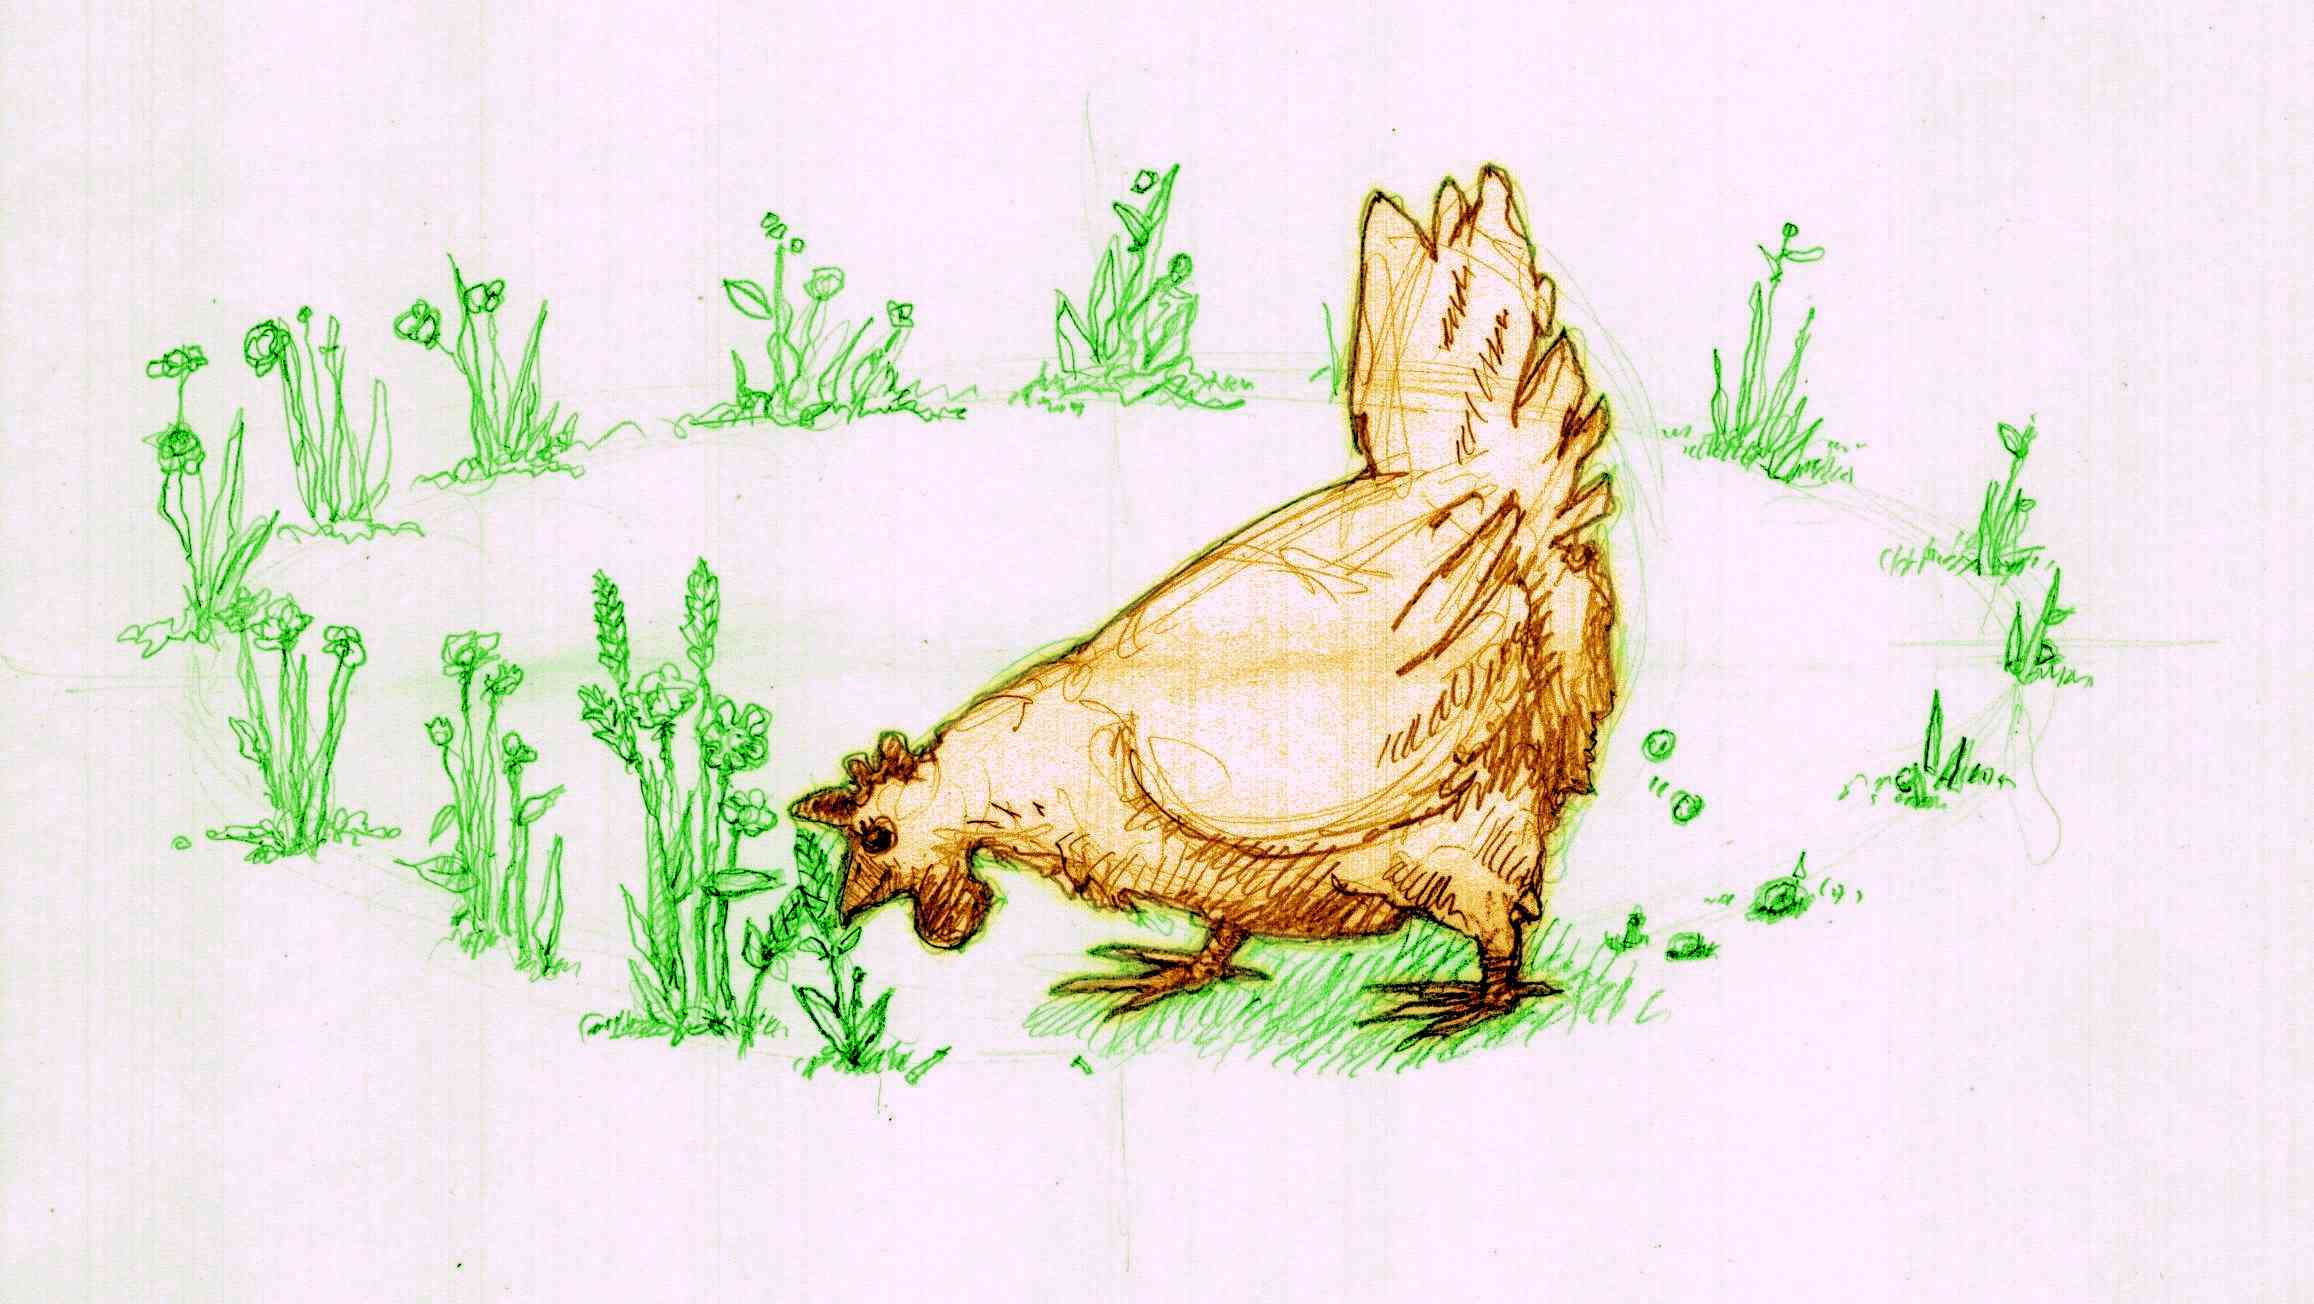 dessin d'une poule consommant en boucle des plantes tirées d'un jardin, qu'elle défèque sous forme d'engrais pour ce dernier. Un bon exemple d'emplacements relatifs.